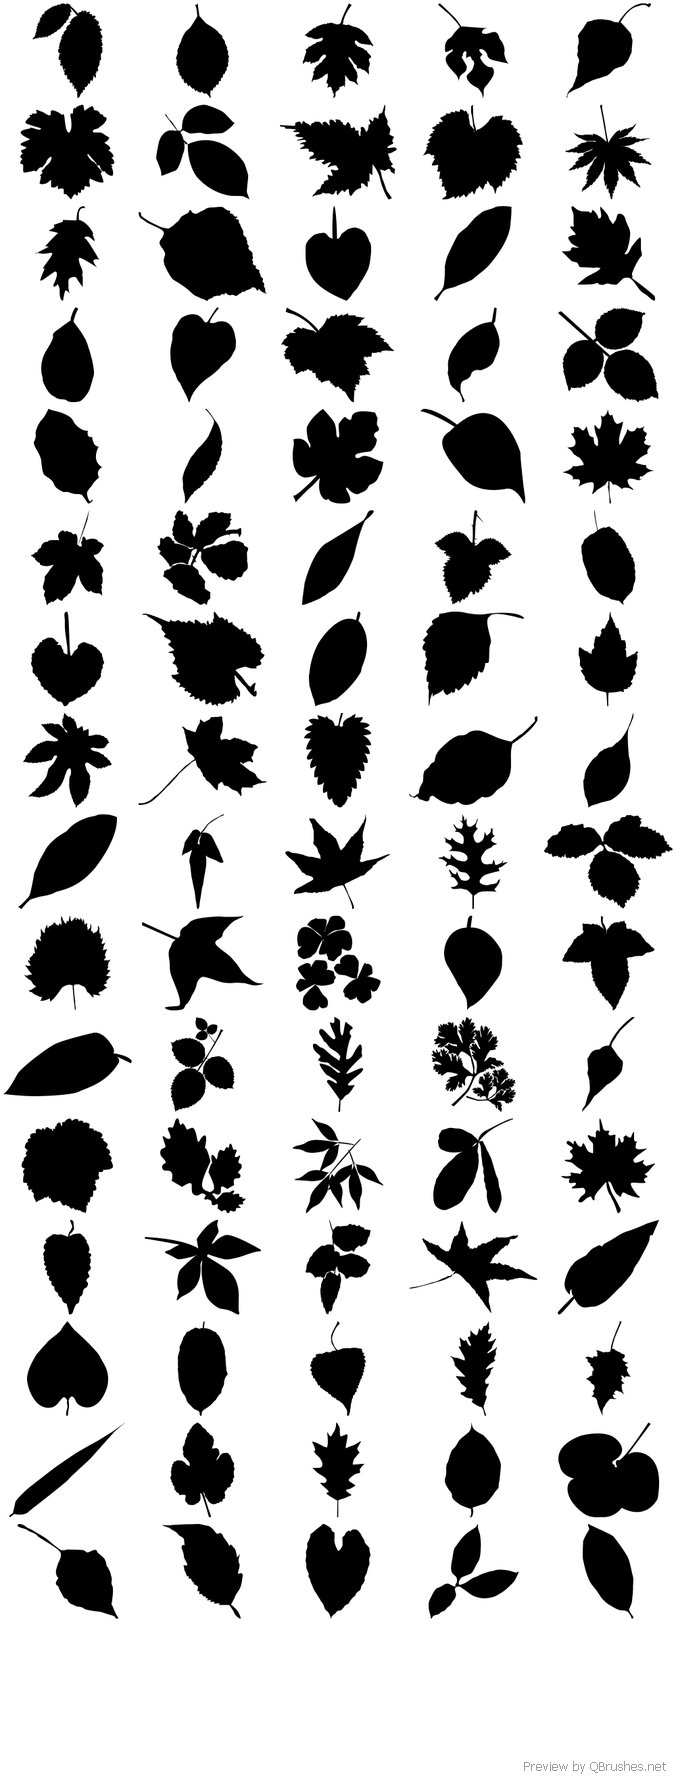 80 leaf silhouettes